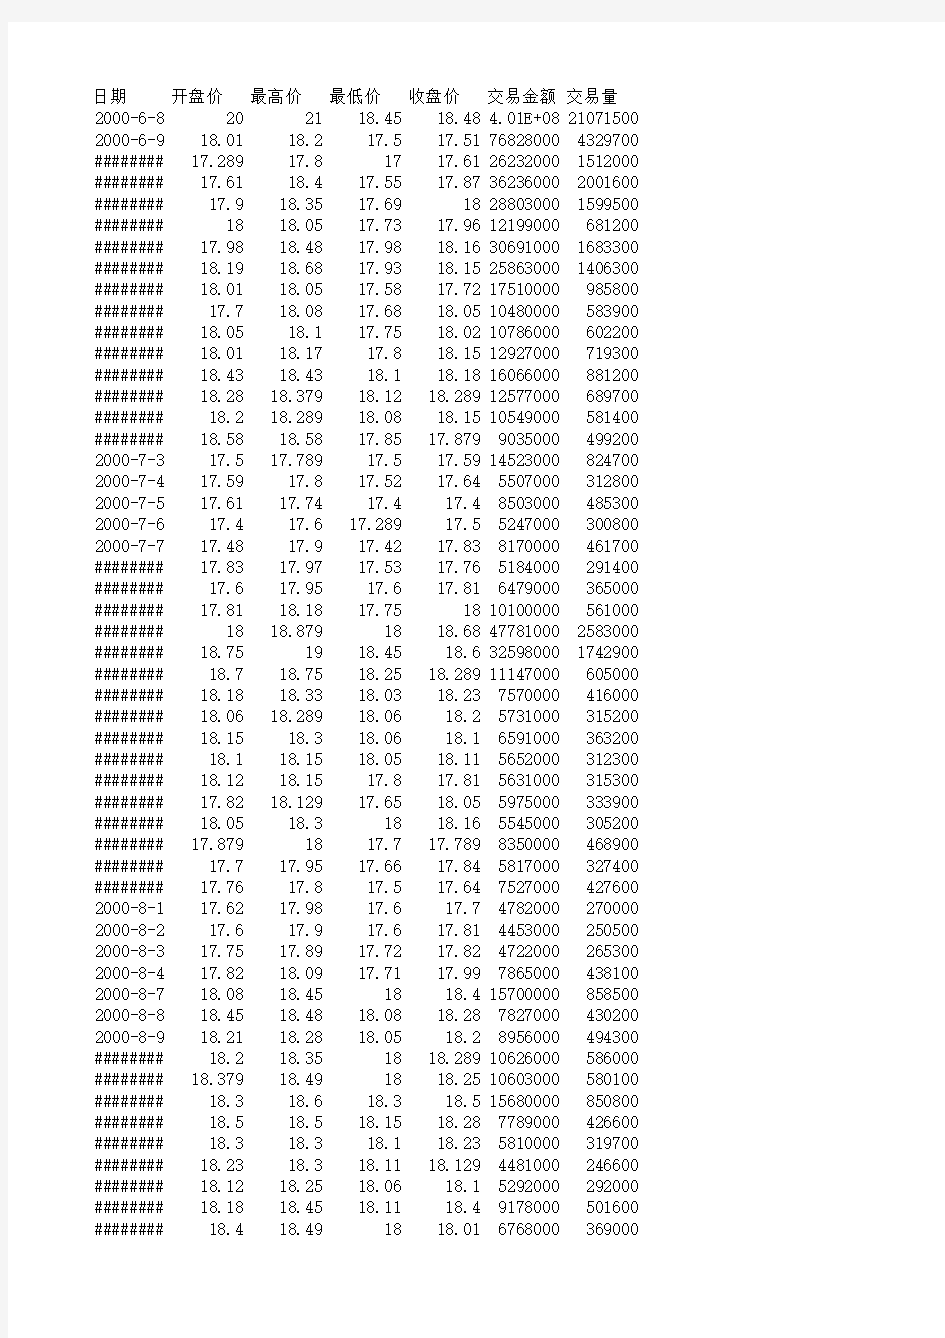 上海证券交易所股票交易历史数据(A股600233、2005年及之前)